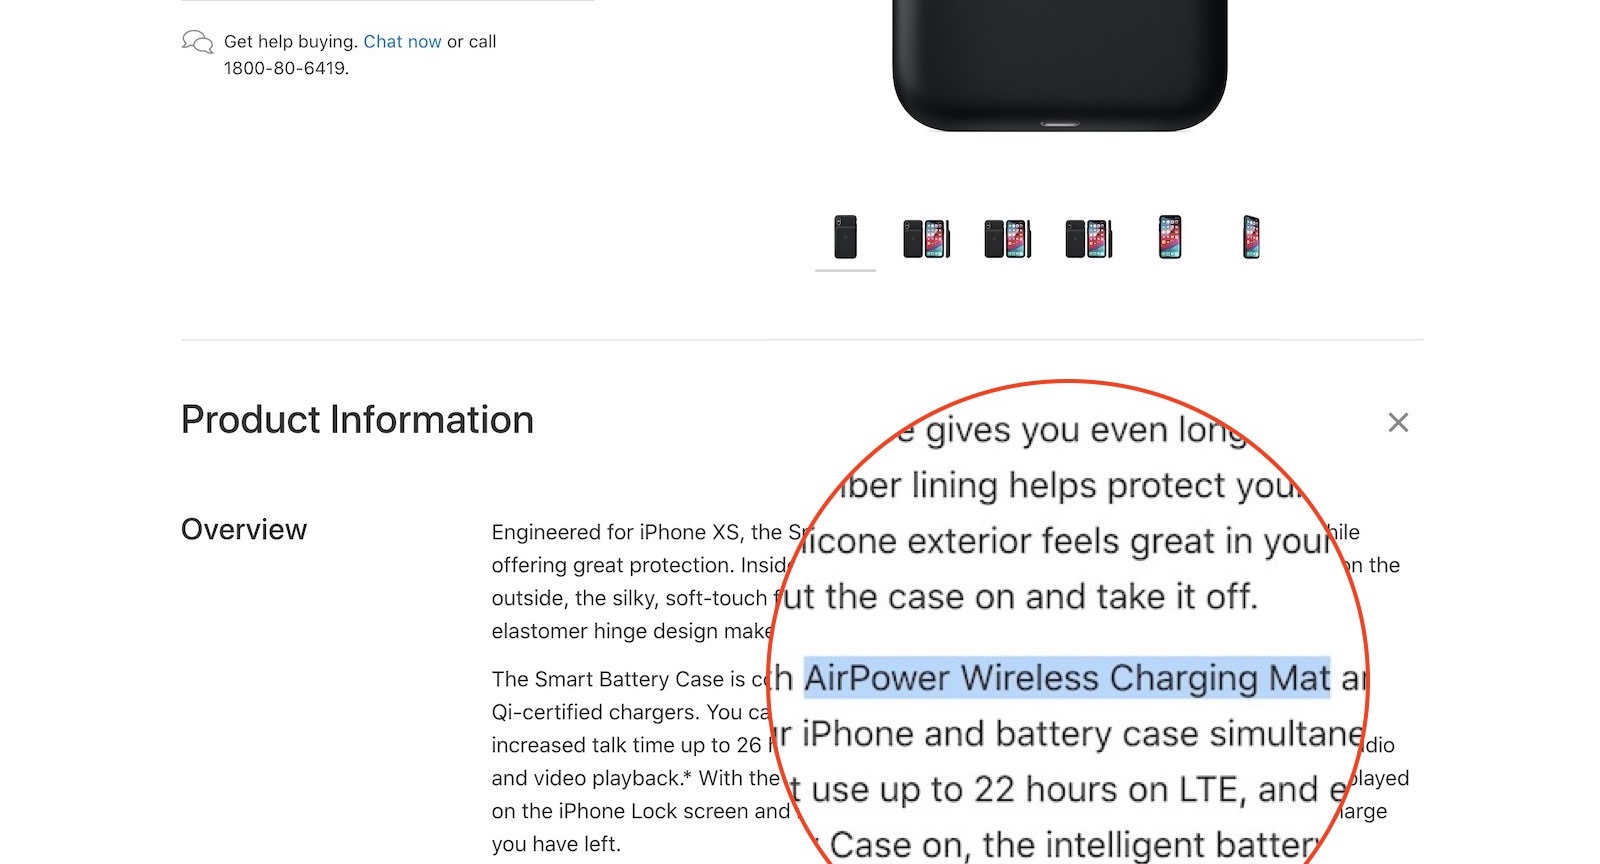 AirPower-Wireless-Charging-Mat-Smart-Case-ogp.jpg